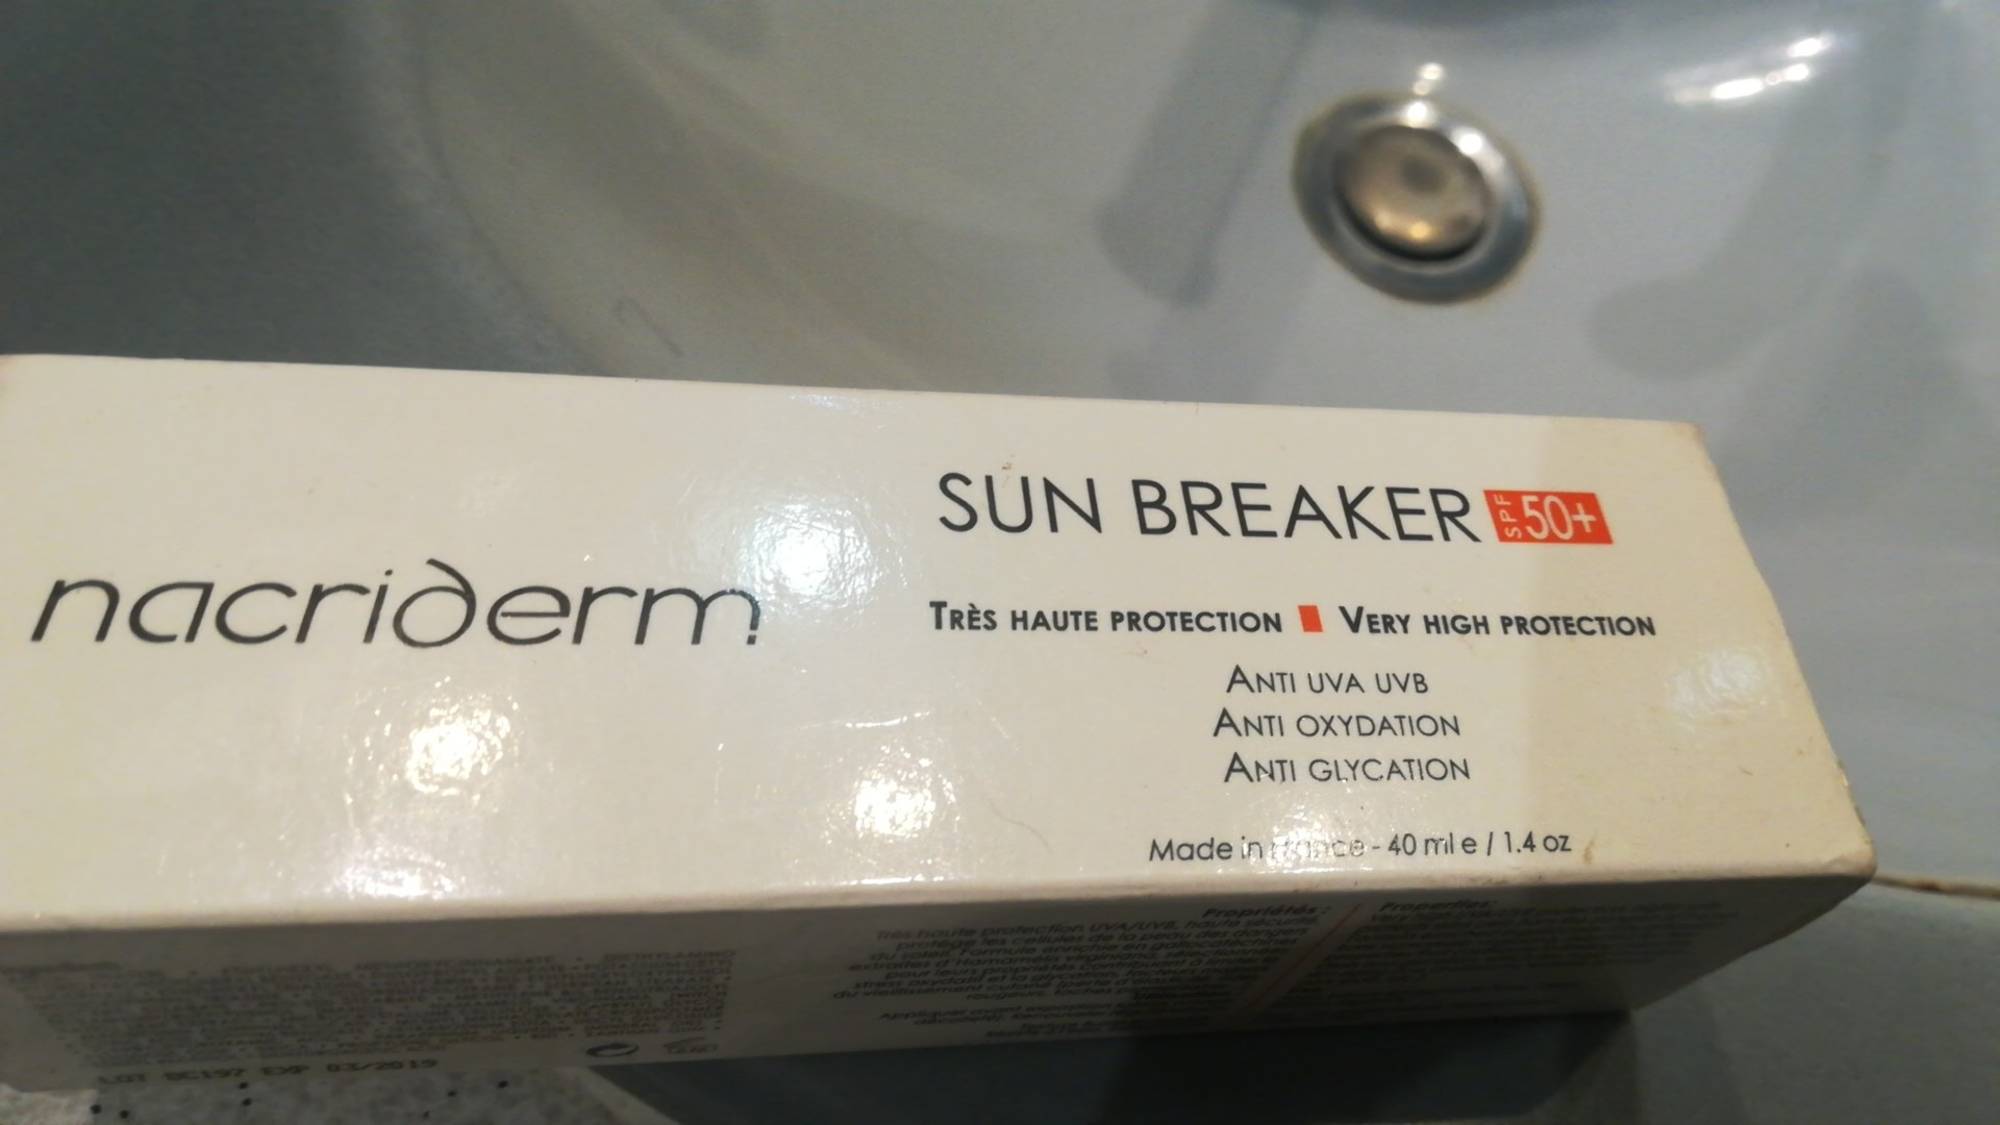 NACRIDERM - Sun breaker SPF 50+ très haute protection